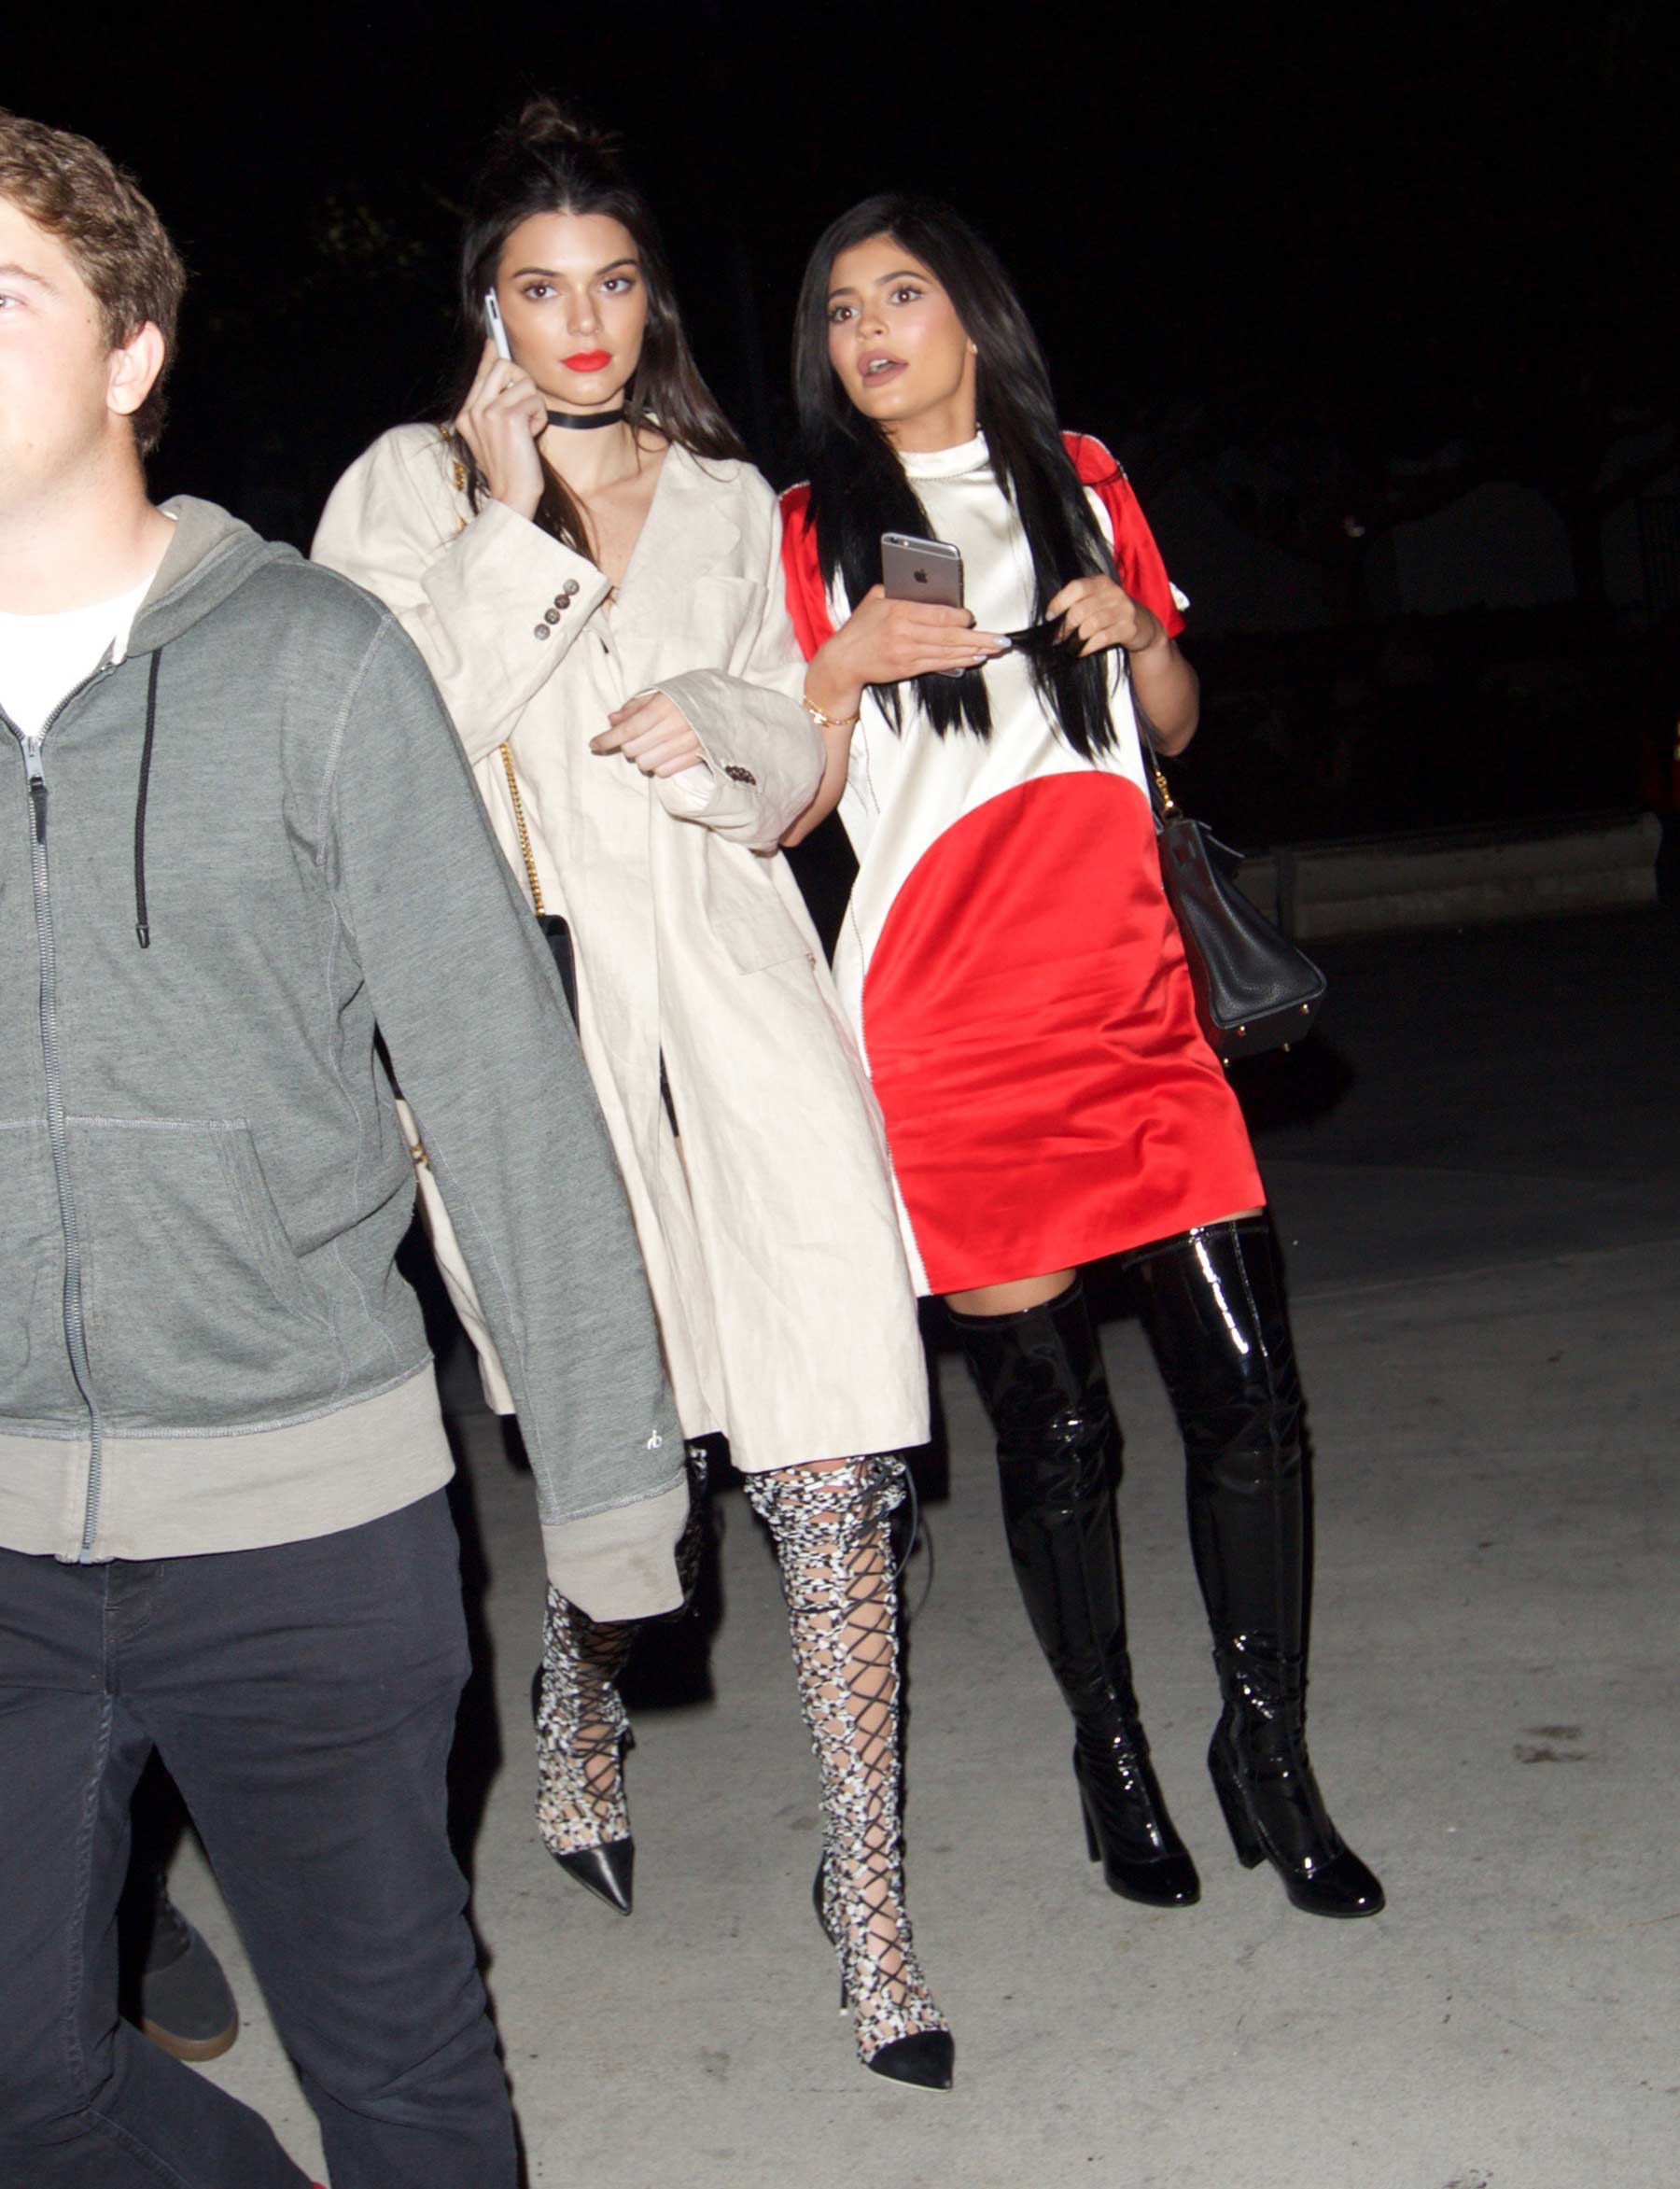 Kylie Jenner leaving the Staples Center